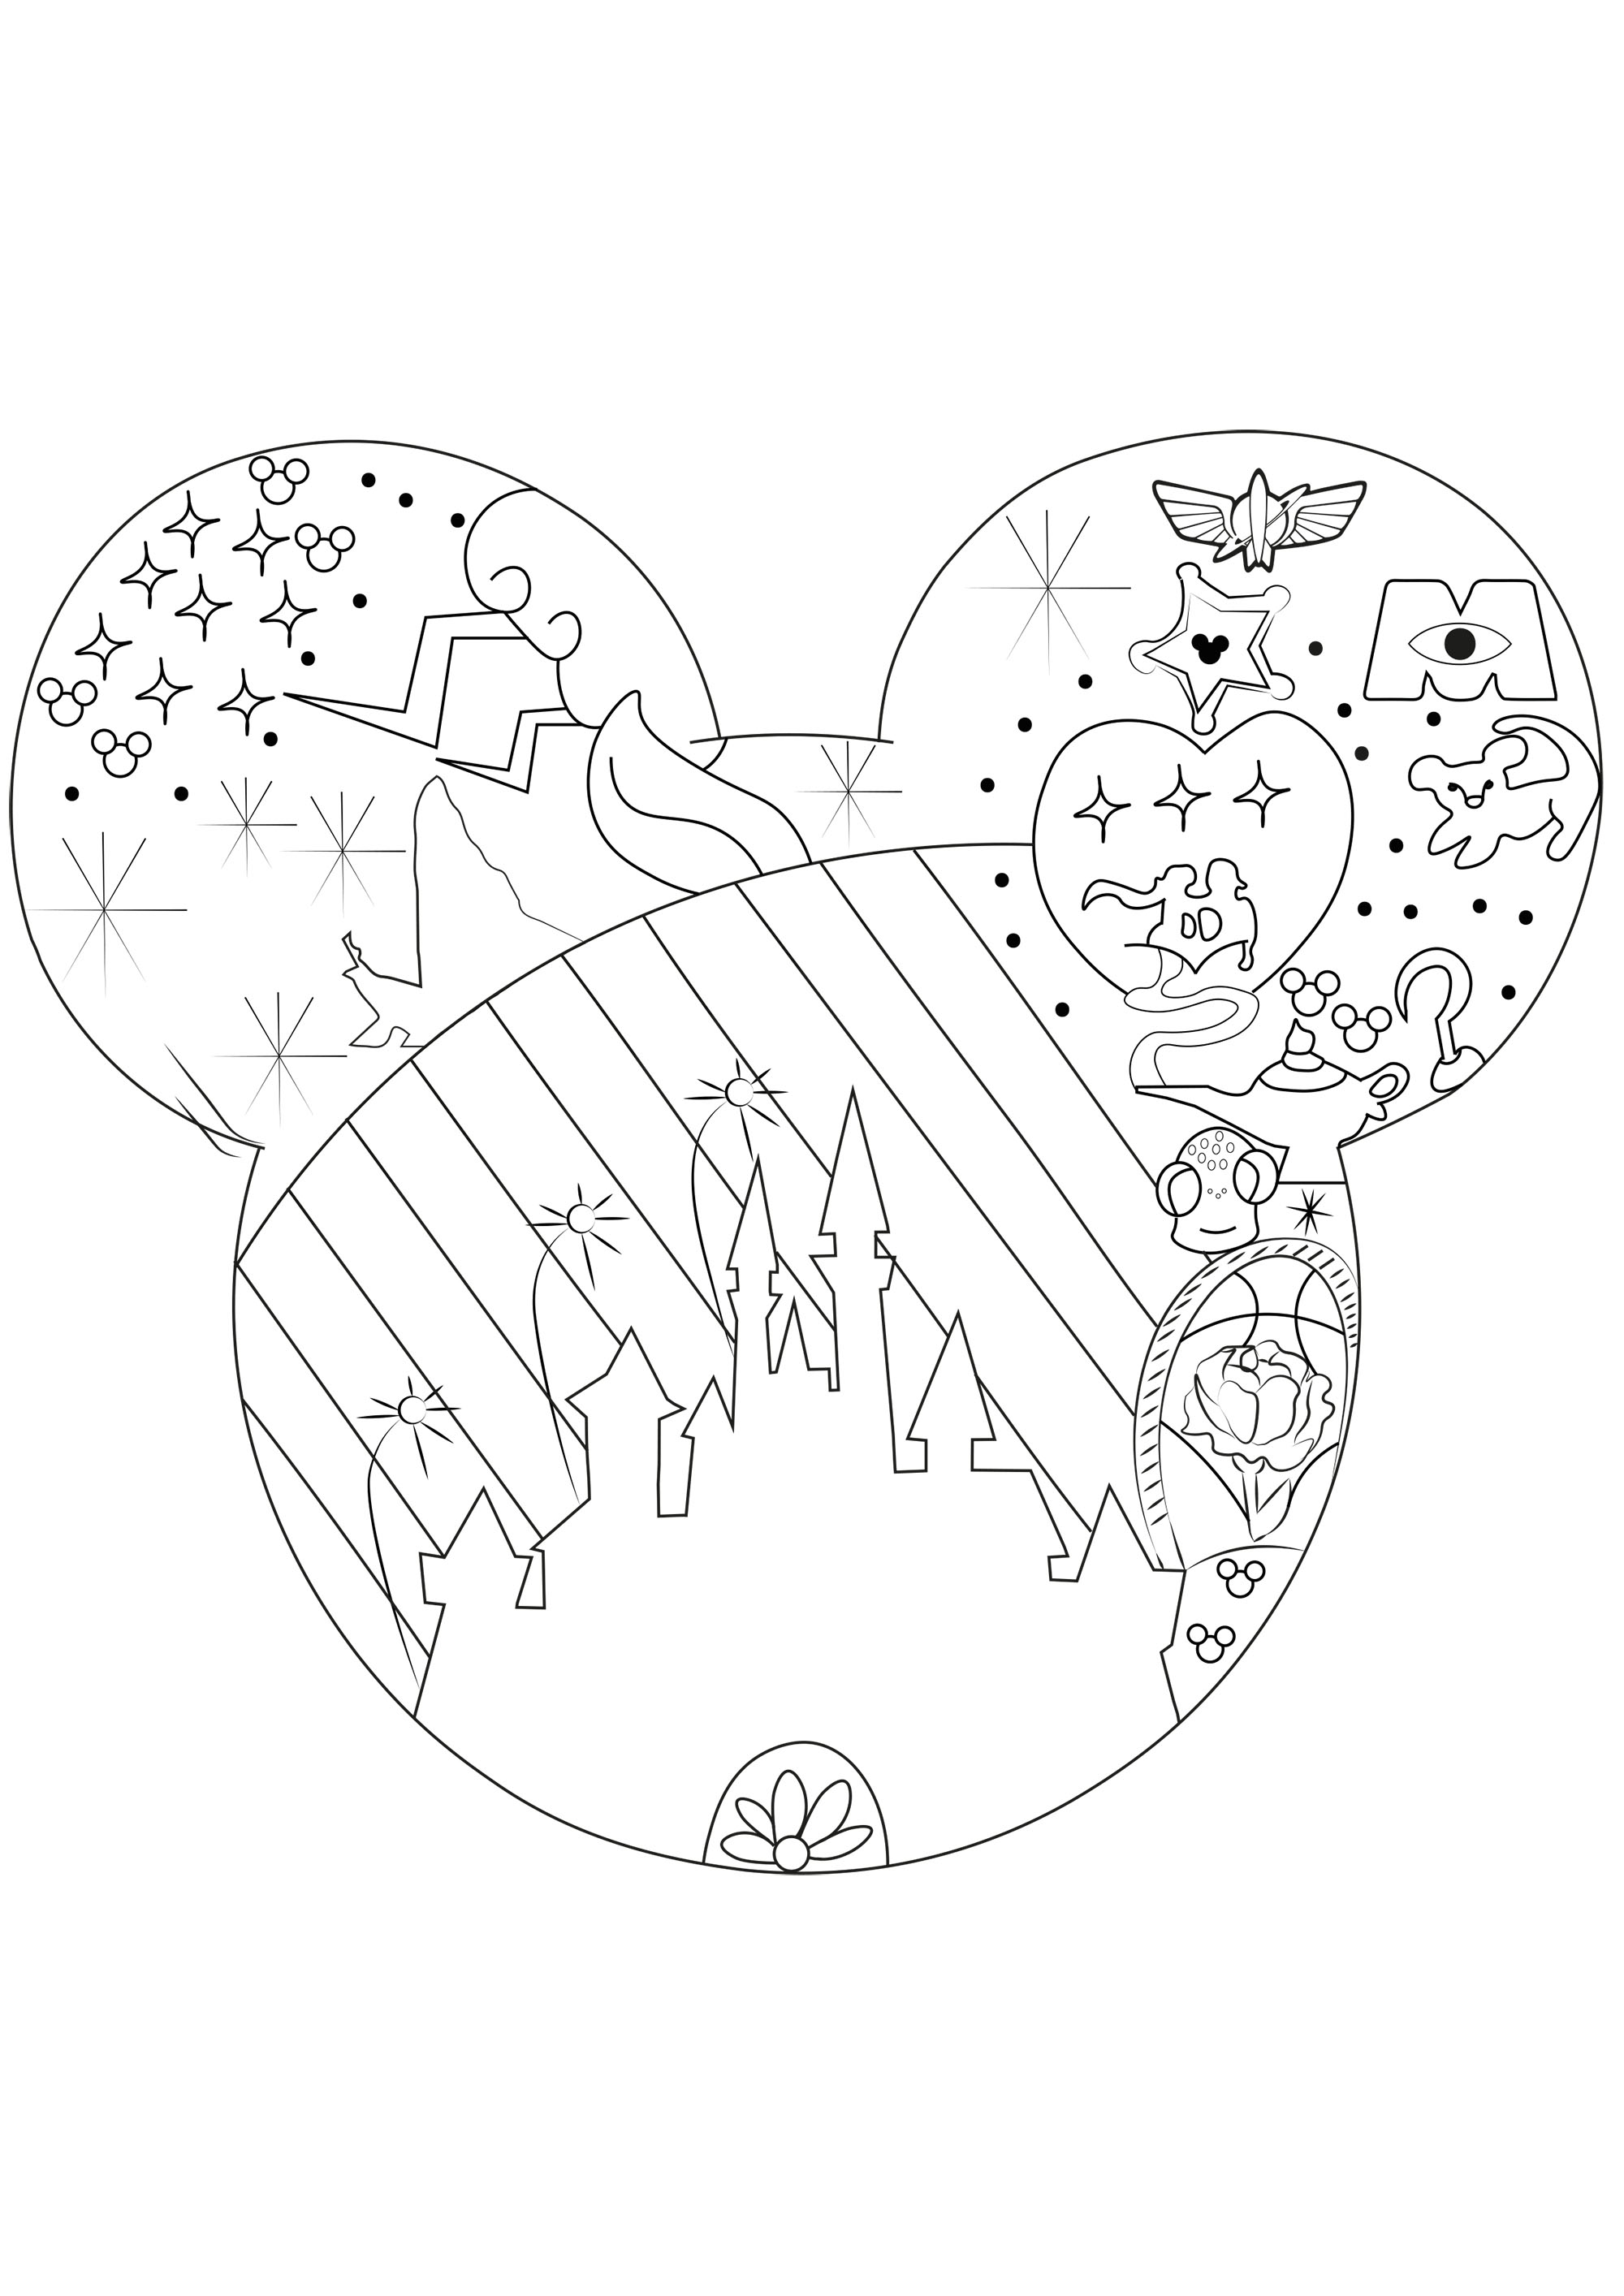 L'univers de Disney - Retour en enfance - Coloriages difficiles pour adultes